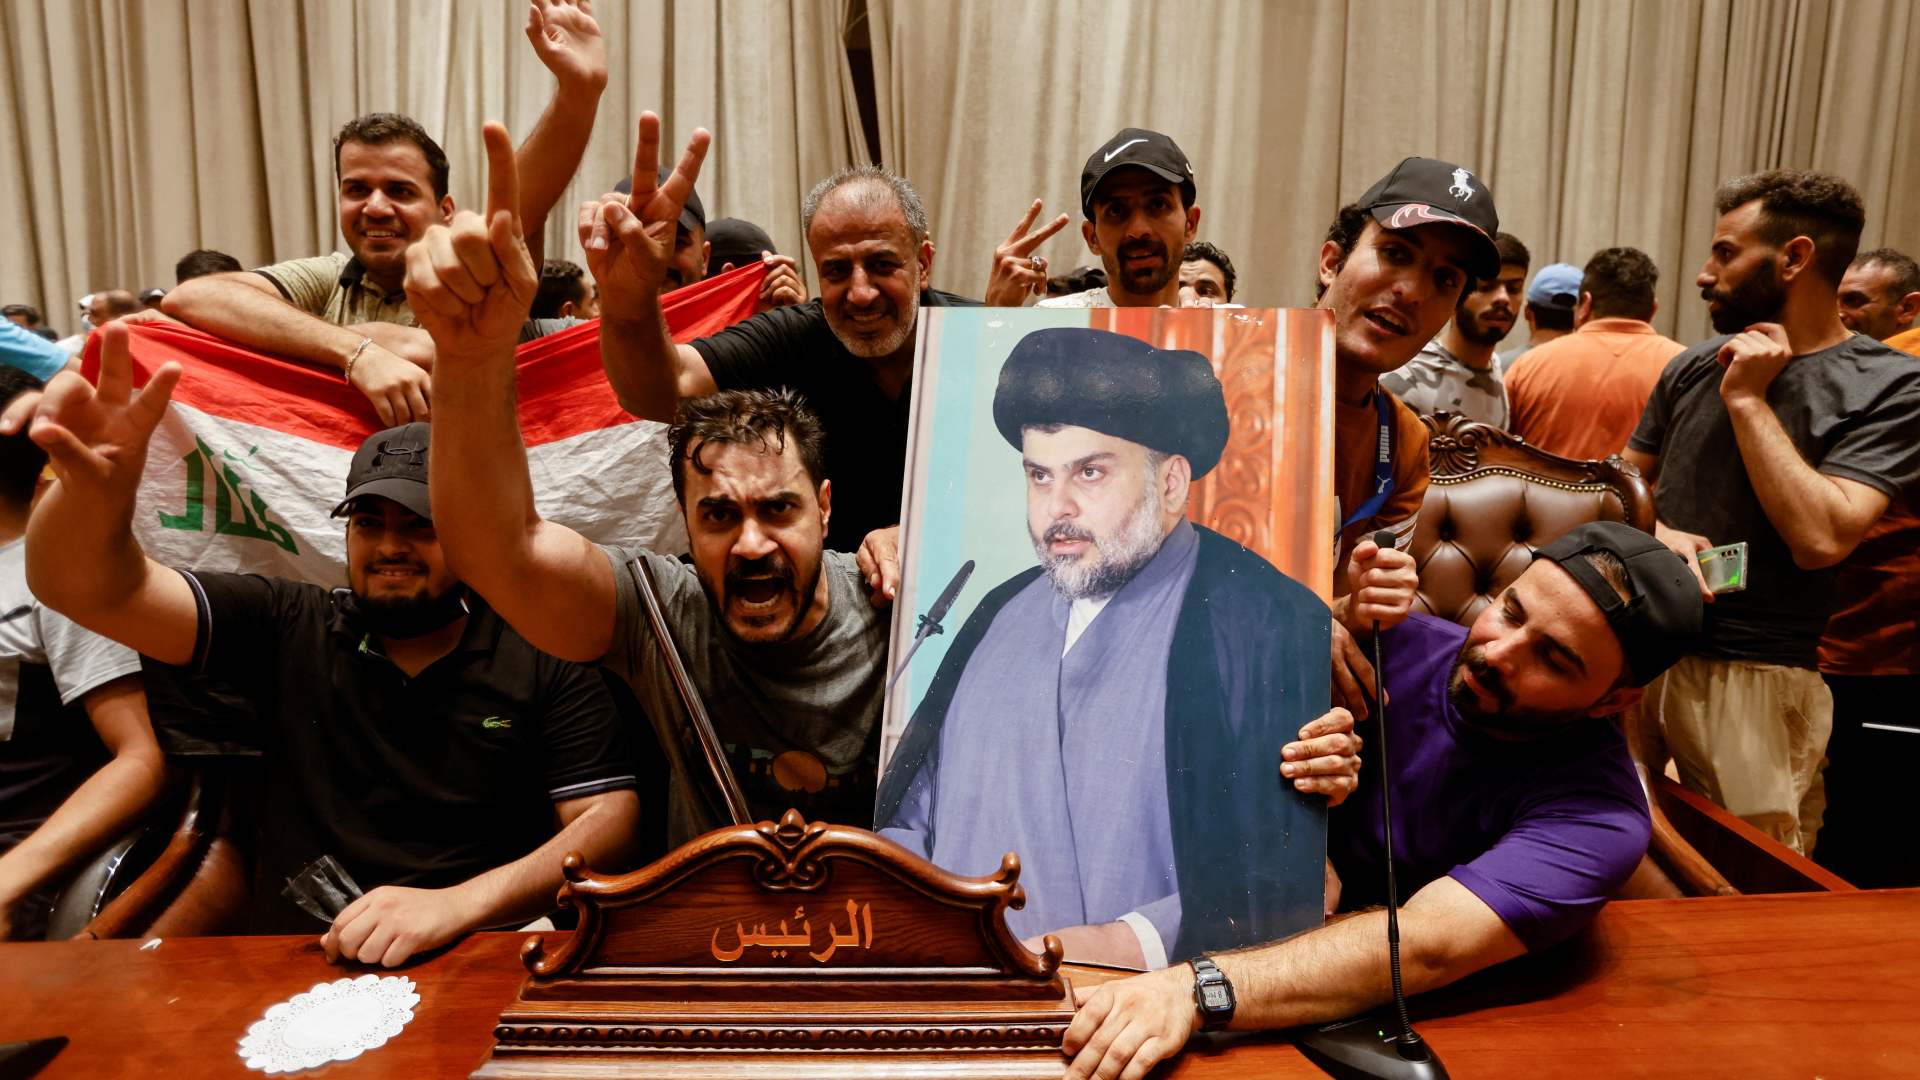 Schiiten besetzen das Parlament in Bagdad und halten ein Plakat des Predigers al-Sadr hoch. | REUTERS